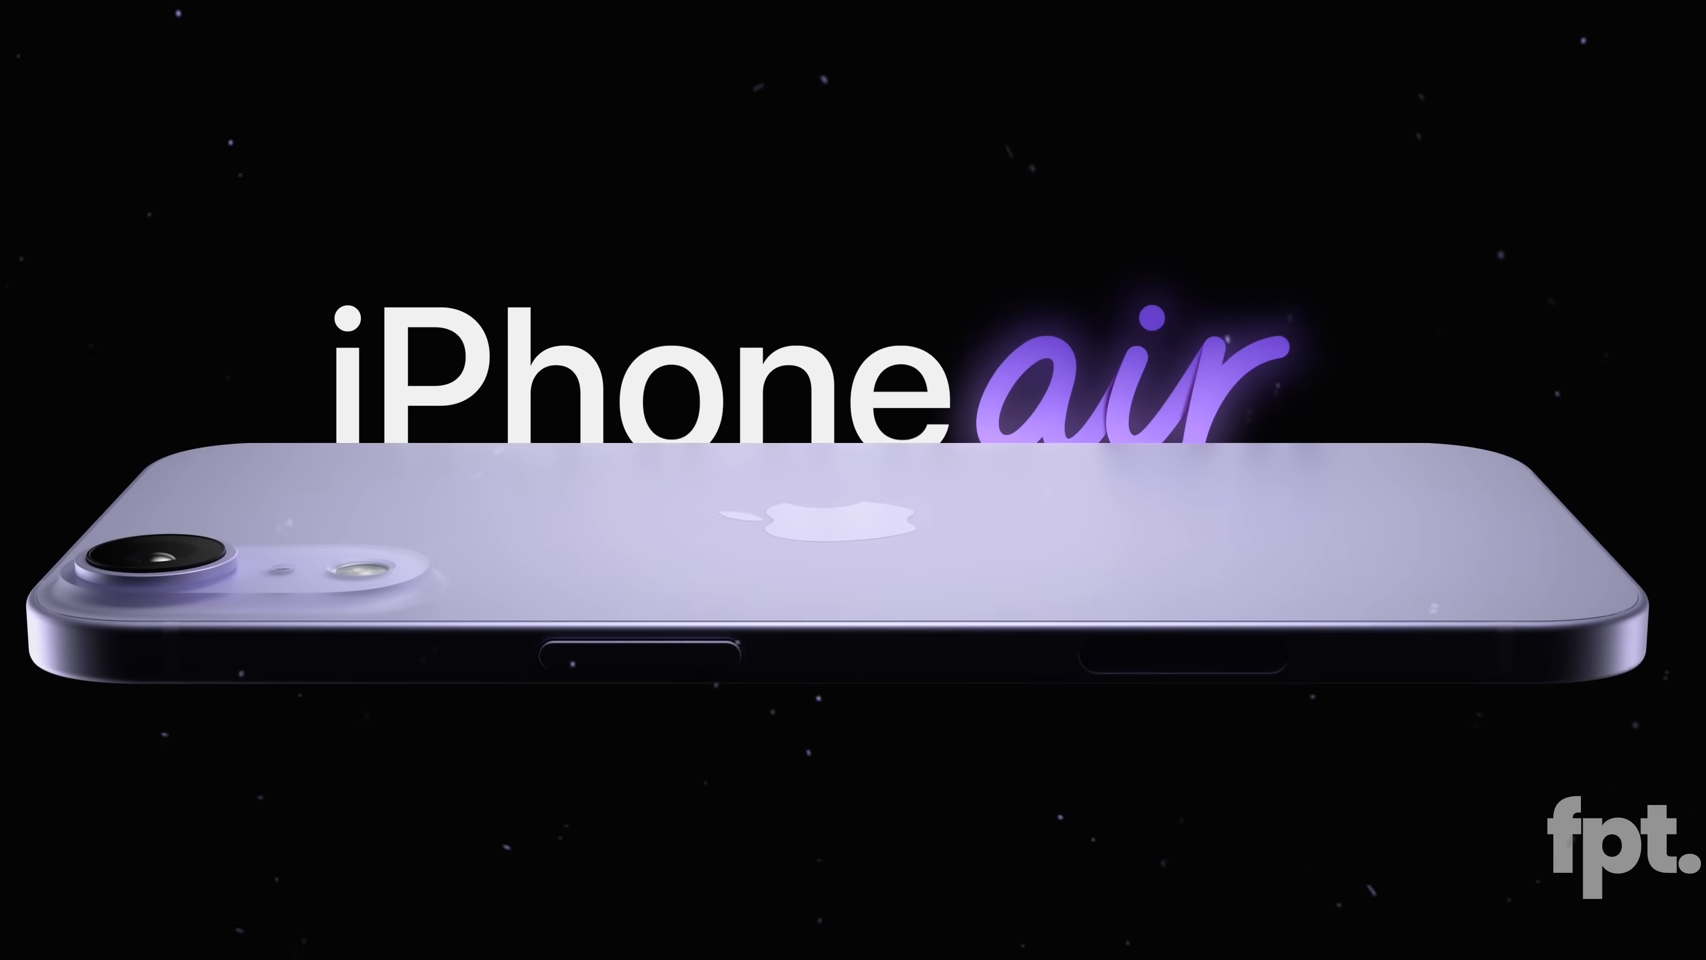 Apple iPhone Air görseli tasarım söylentilerine dayanıyor | Görsel kredisi – FPT - iPhone Air, Apple'ın iPhone Plus'ın satılmayacağını kabul etmesi anlamına geliyor